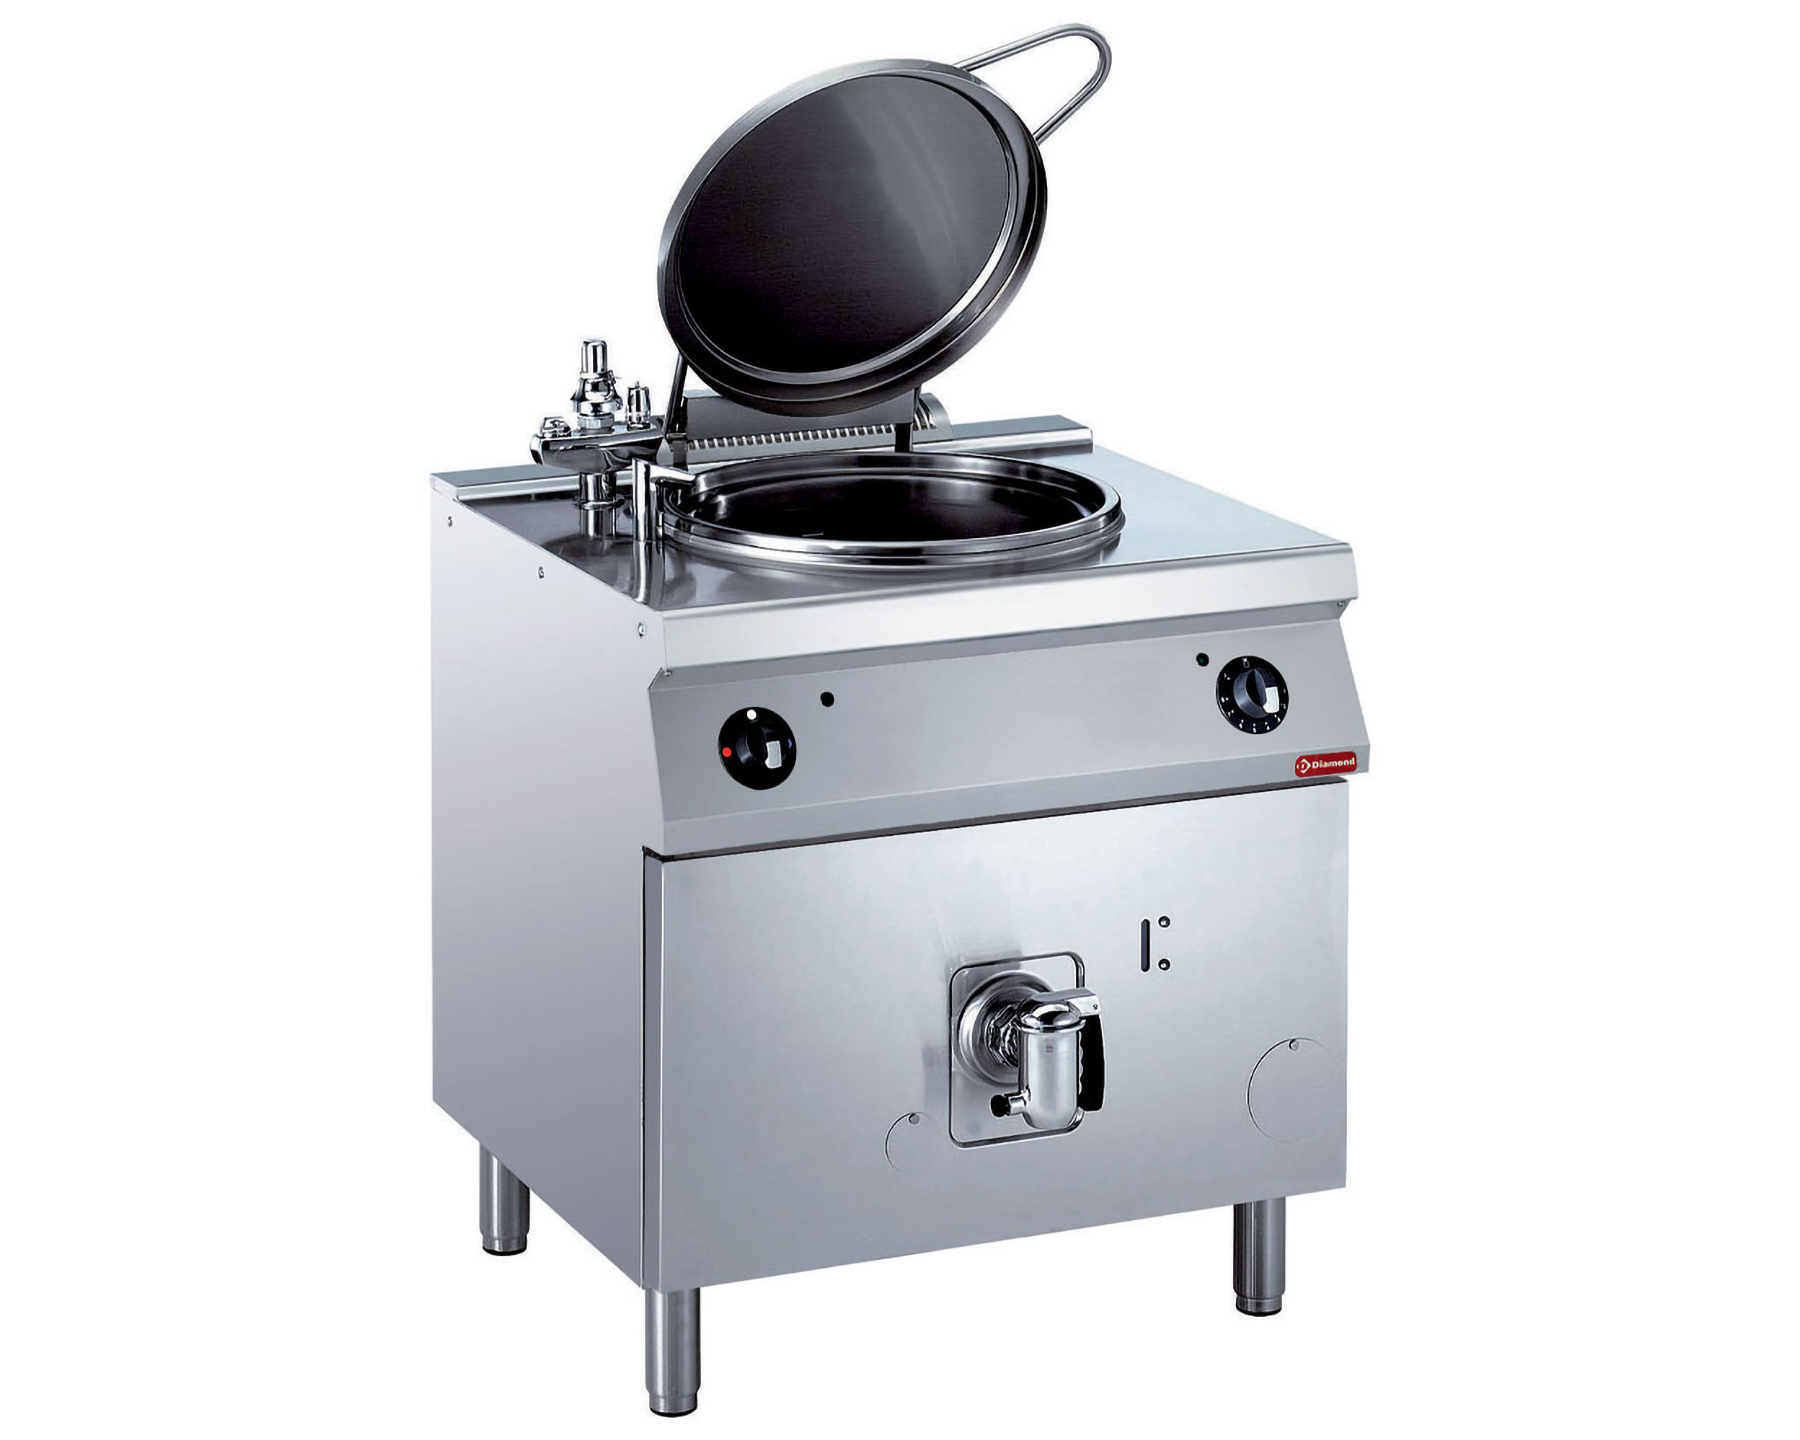  Elektrischer Kochkessel 60L – Indirekte Heizung